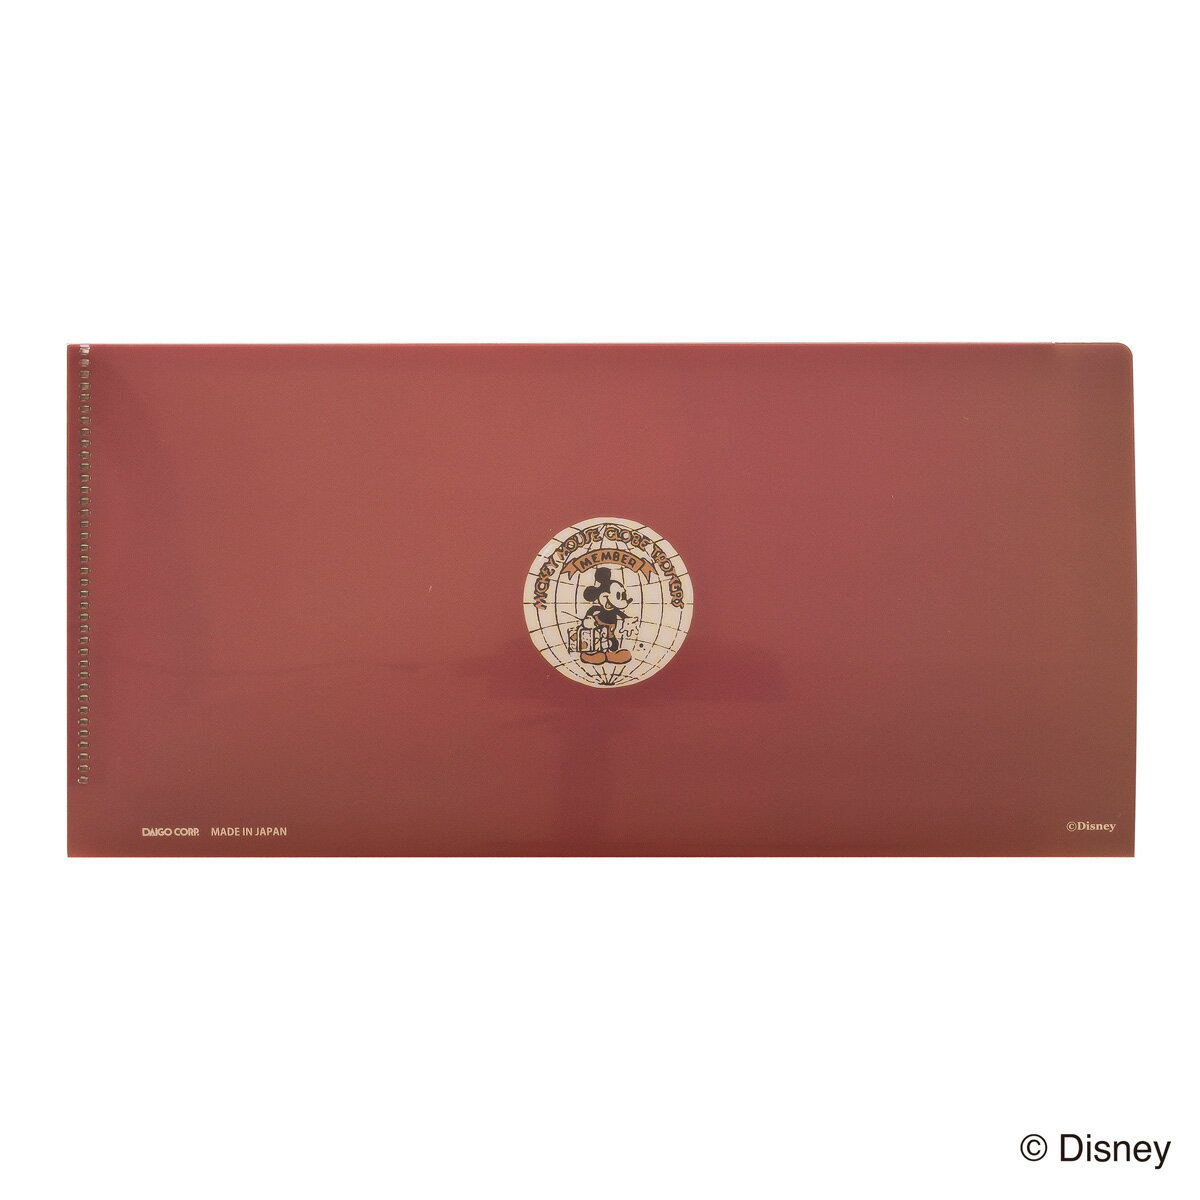 ディズニー 生誕90周年商品 チケットファイル ミッキーマウス ドナルドダック ミッキー&フレンズ N1619 ダイゴー